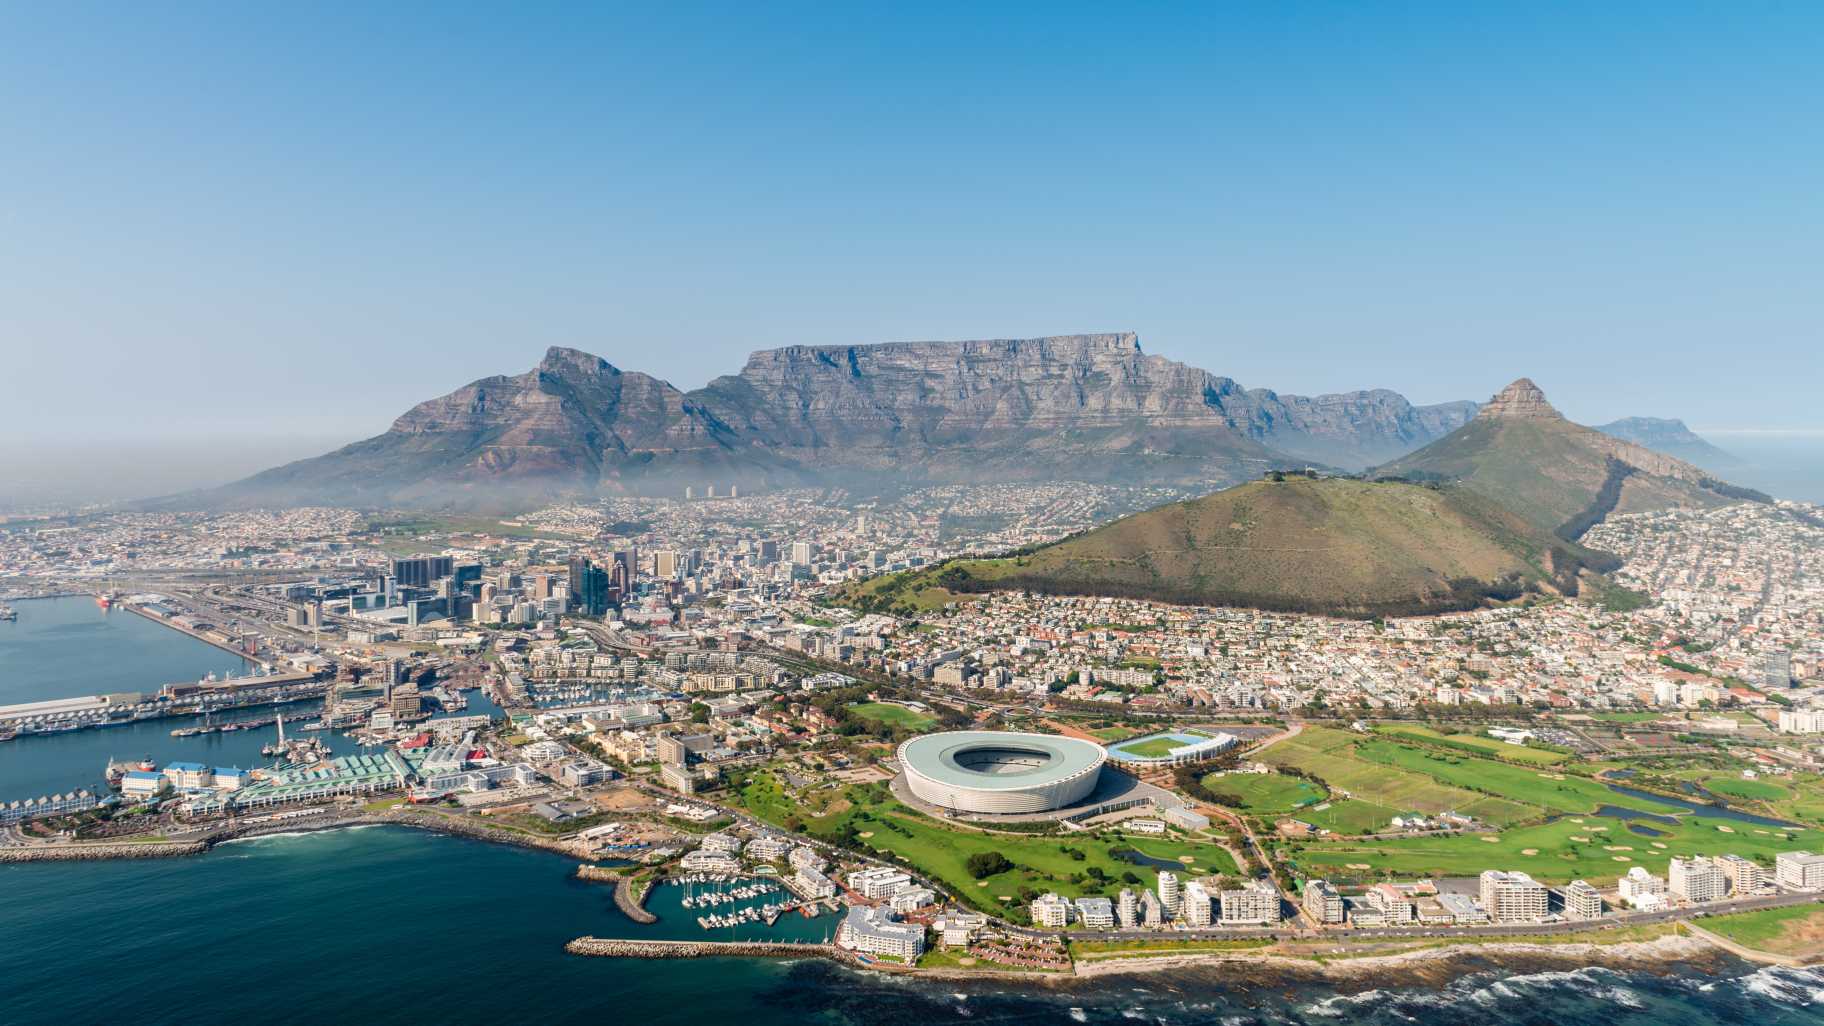 Kapstadt in Südafrika aus der Luft gesehen